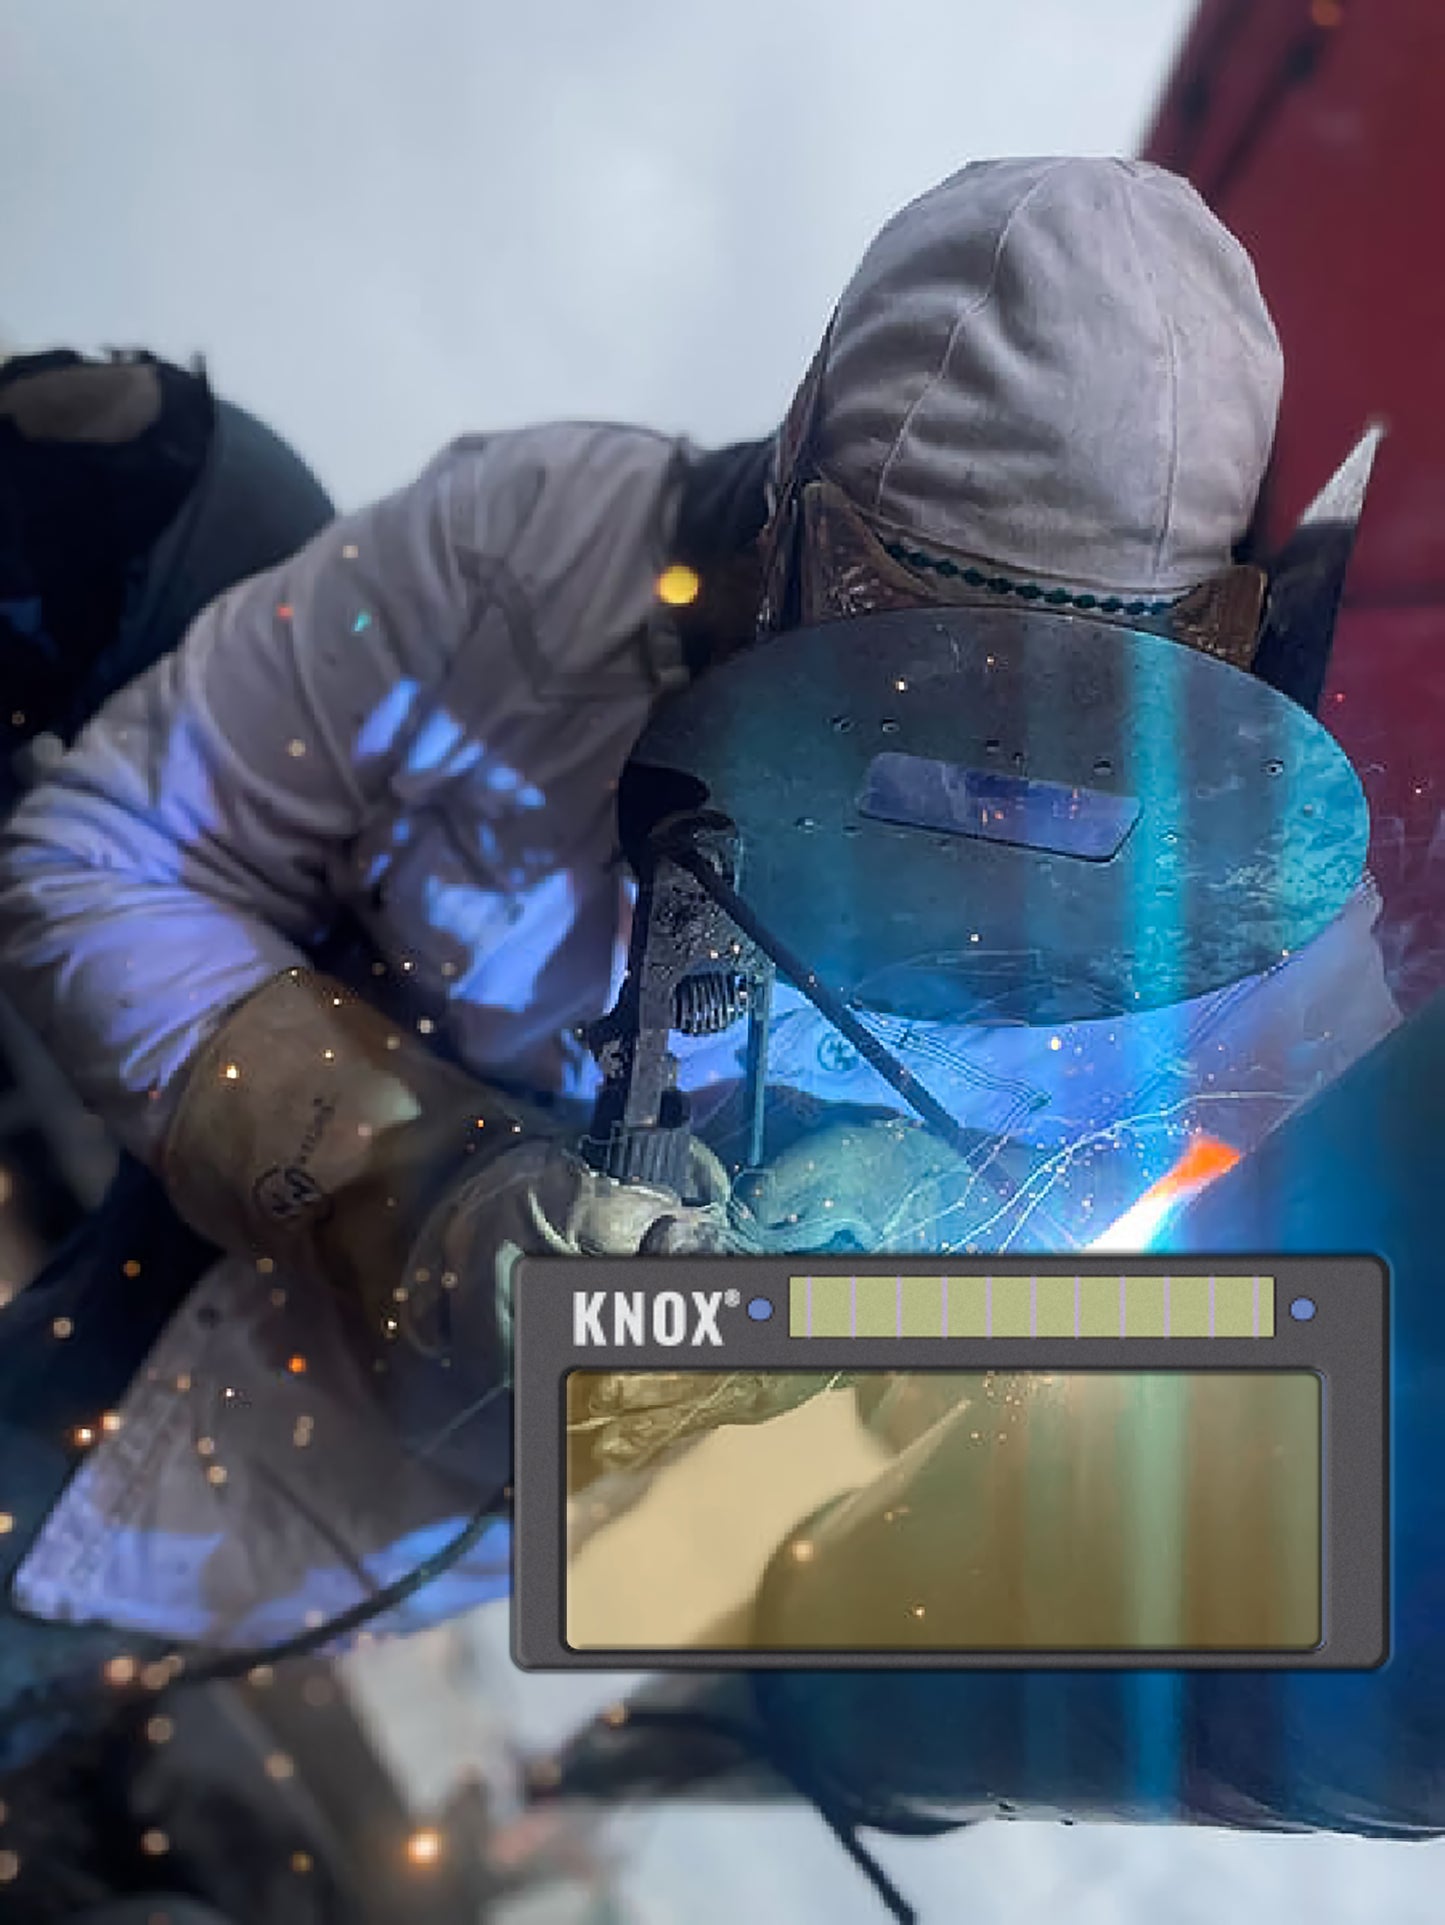 Knox 2x4 R-Series Auto Darkening Fix Shade Welding Lens R682